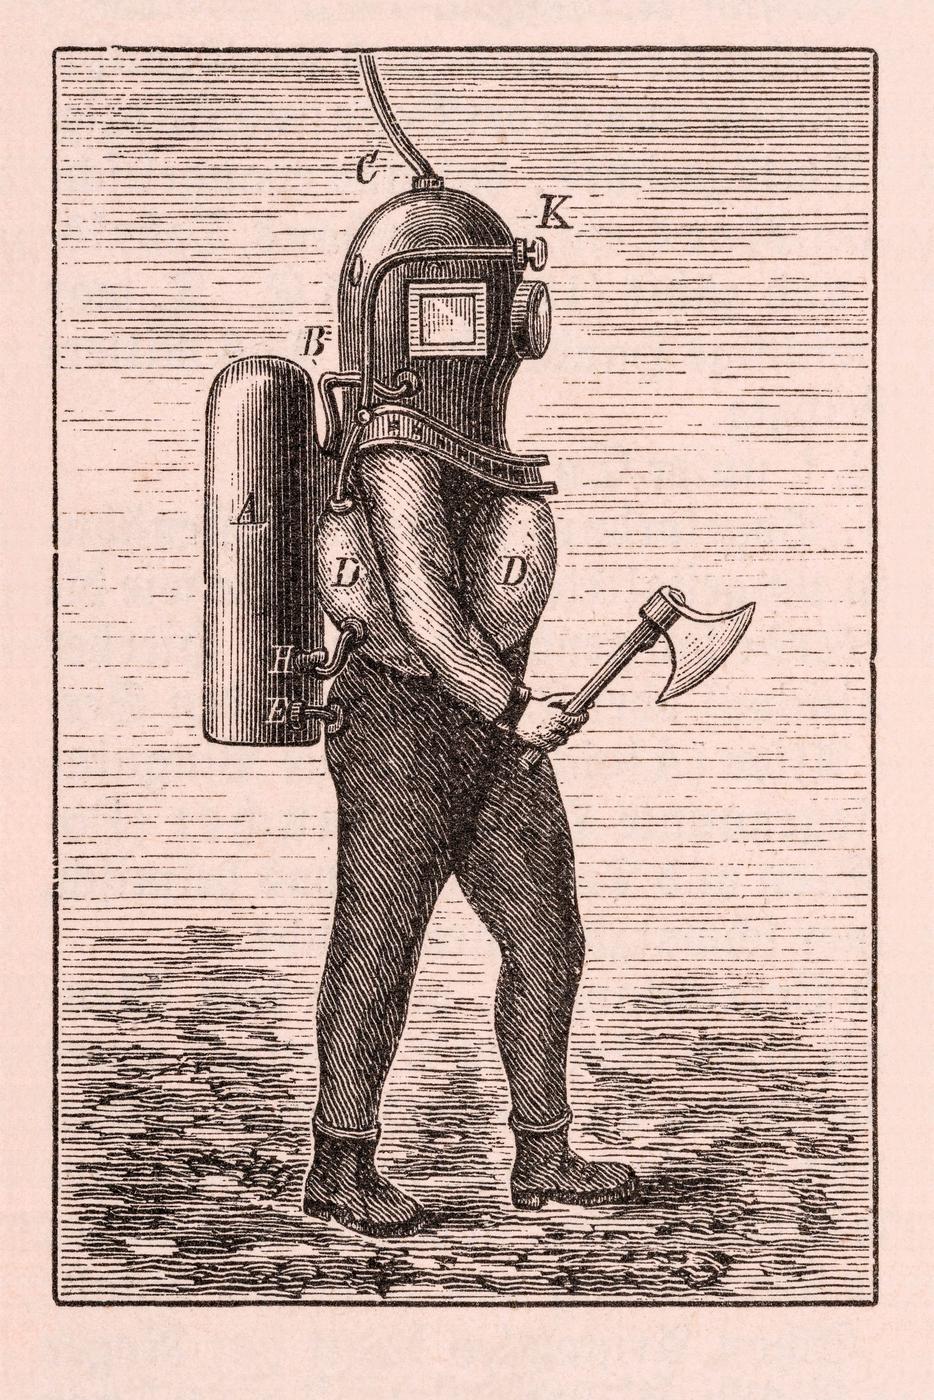 Der Holzstich von 1863 zeigt einen Taucher mit autonomem Tauchgerät.